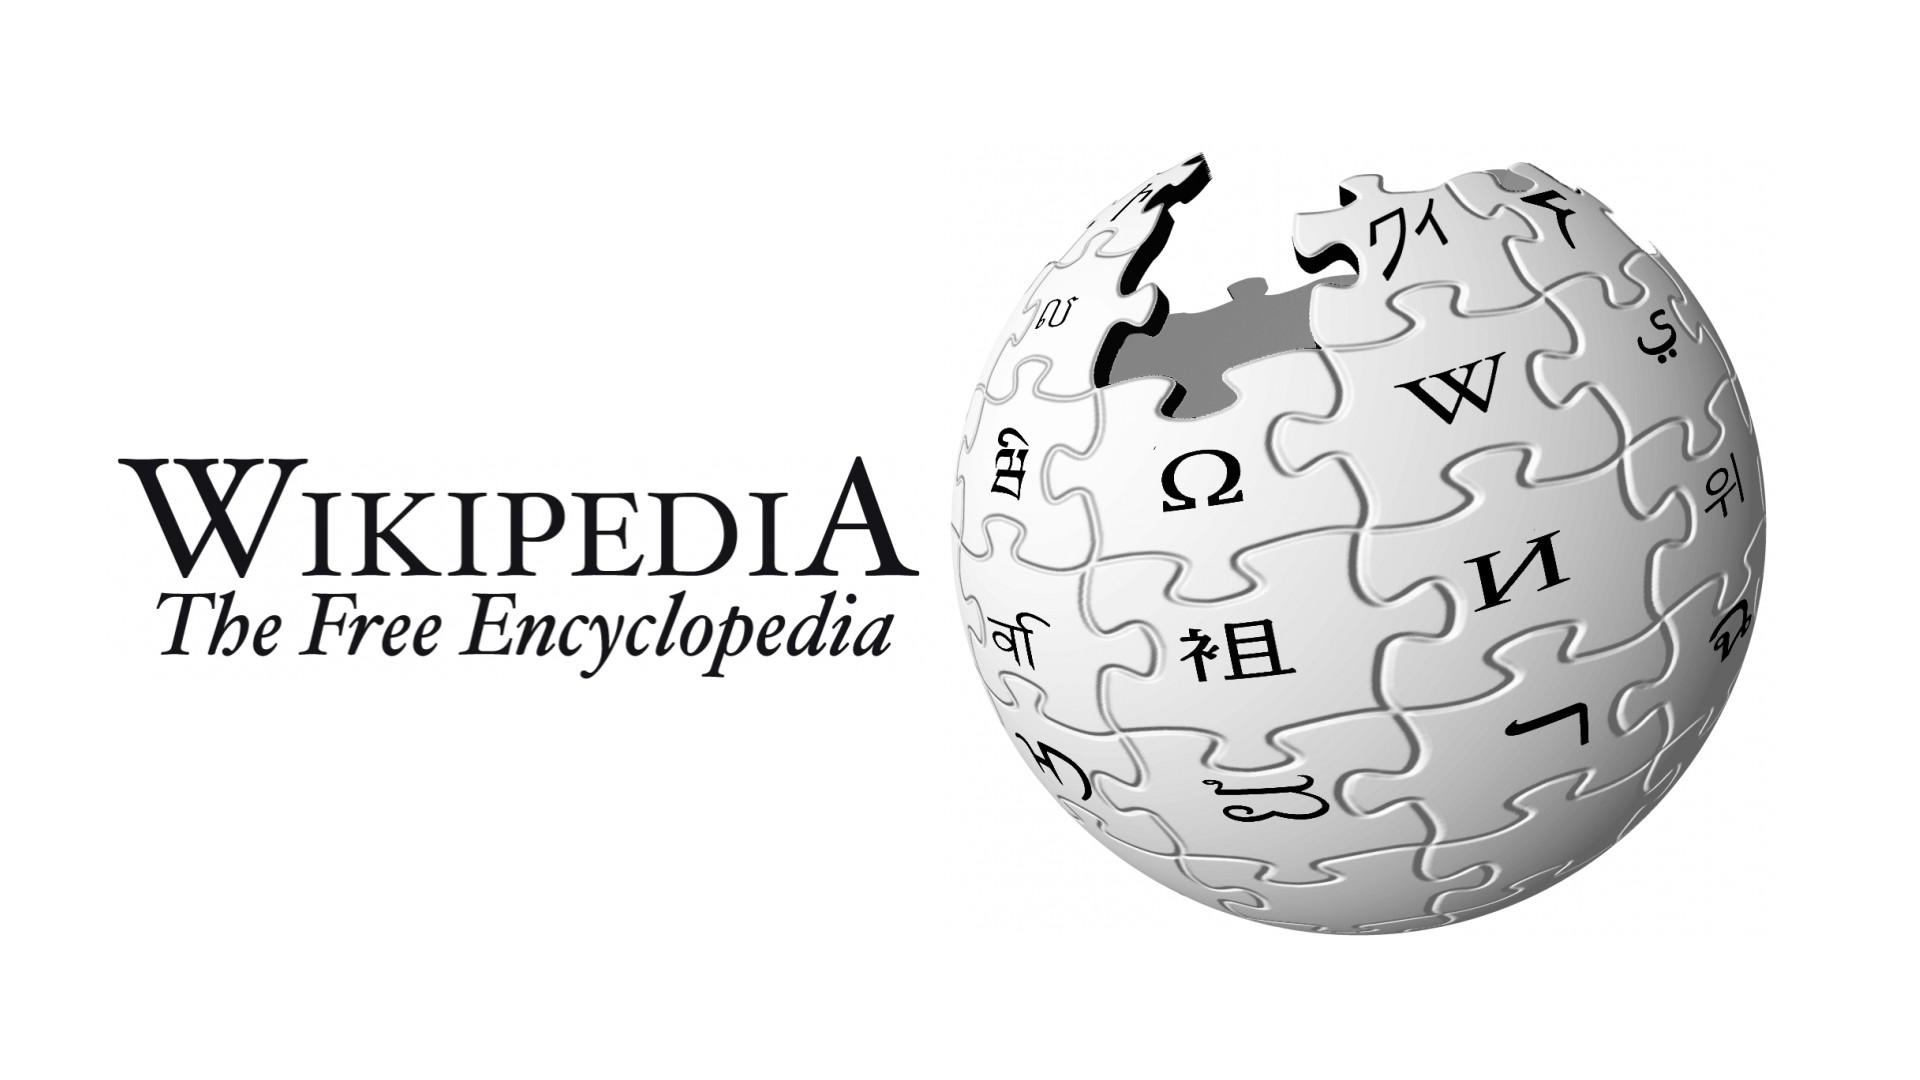 wikipedia-la-enciclopedia-gratis-en-internet-boston-s-online-hispanic